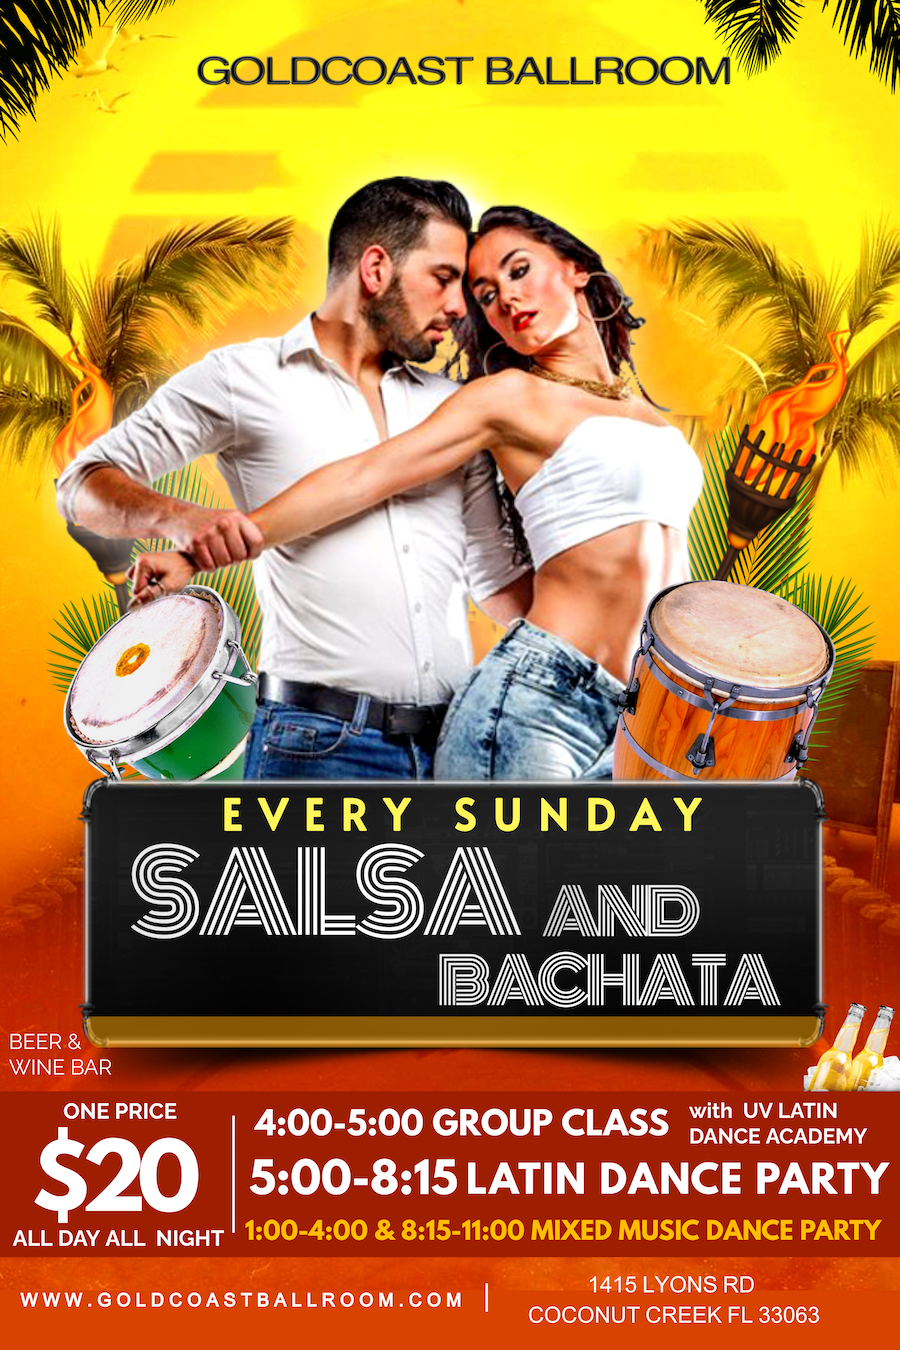 Sundays at Goldcoast Ballroom - Salsa & Bachata + More